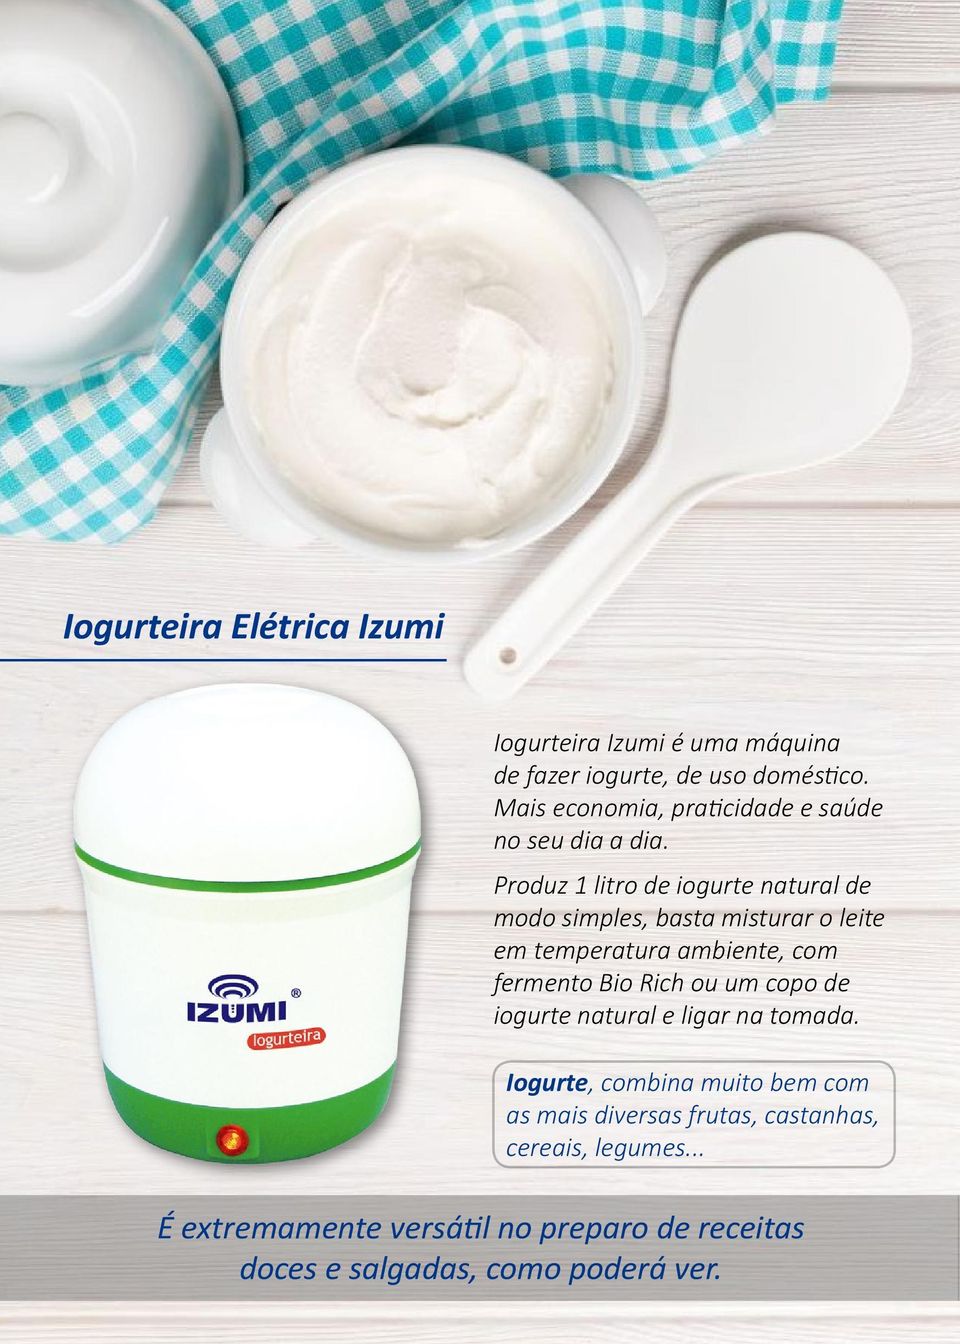 Produz 1 litro de iogurte natural de modo simples, basta misturar o leite em temperatura ambiente, com fermento Bio Rich